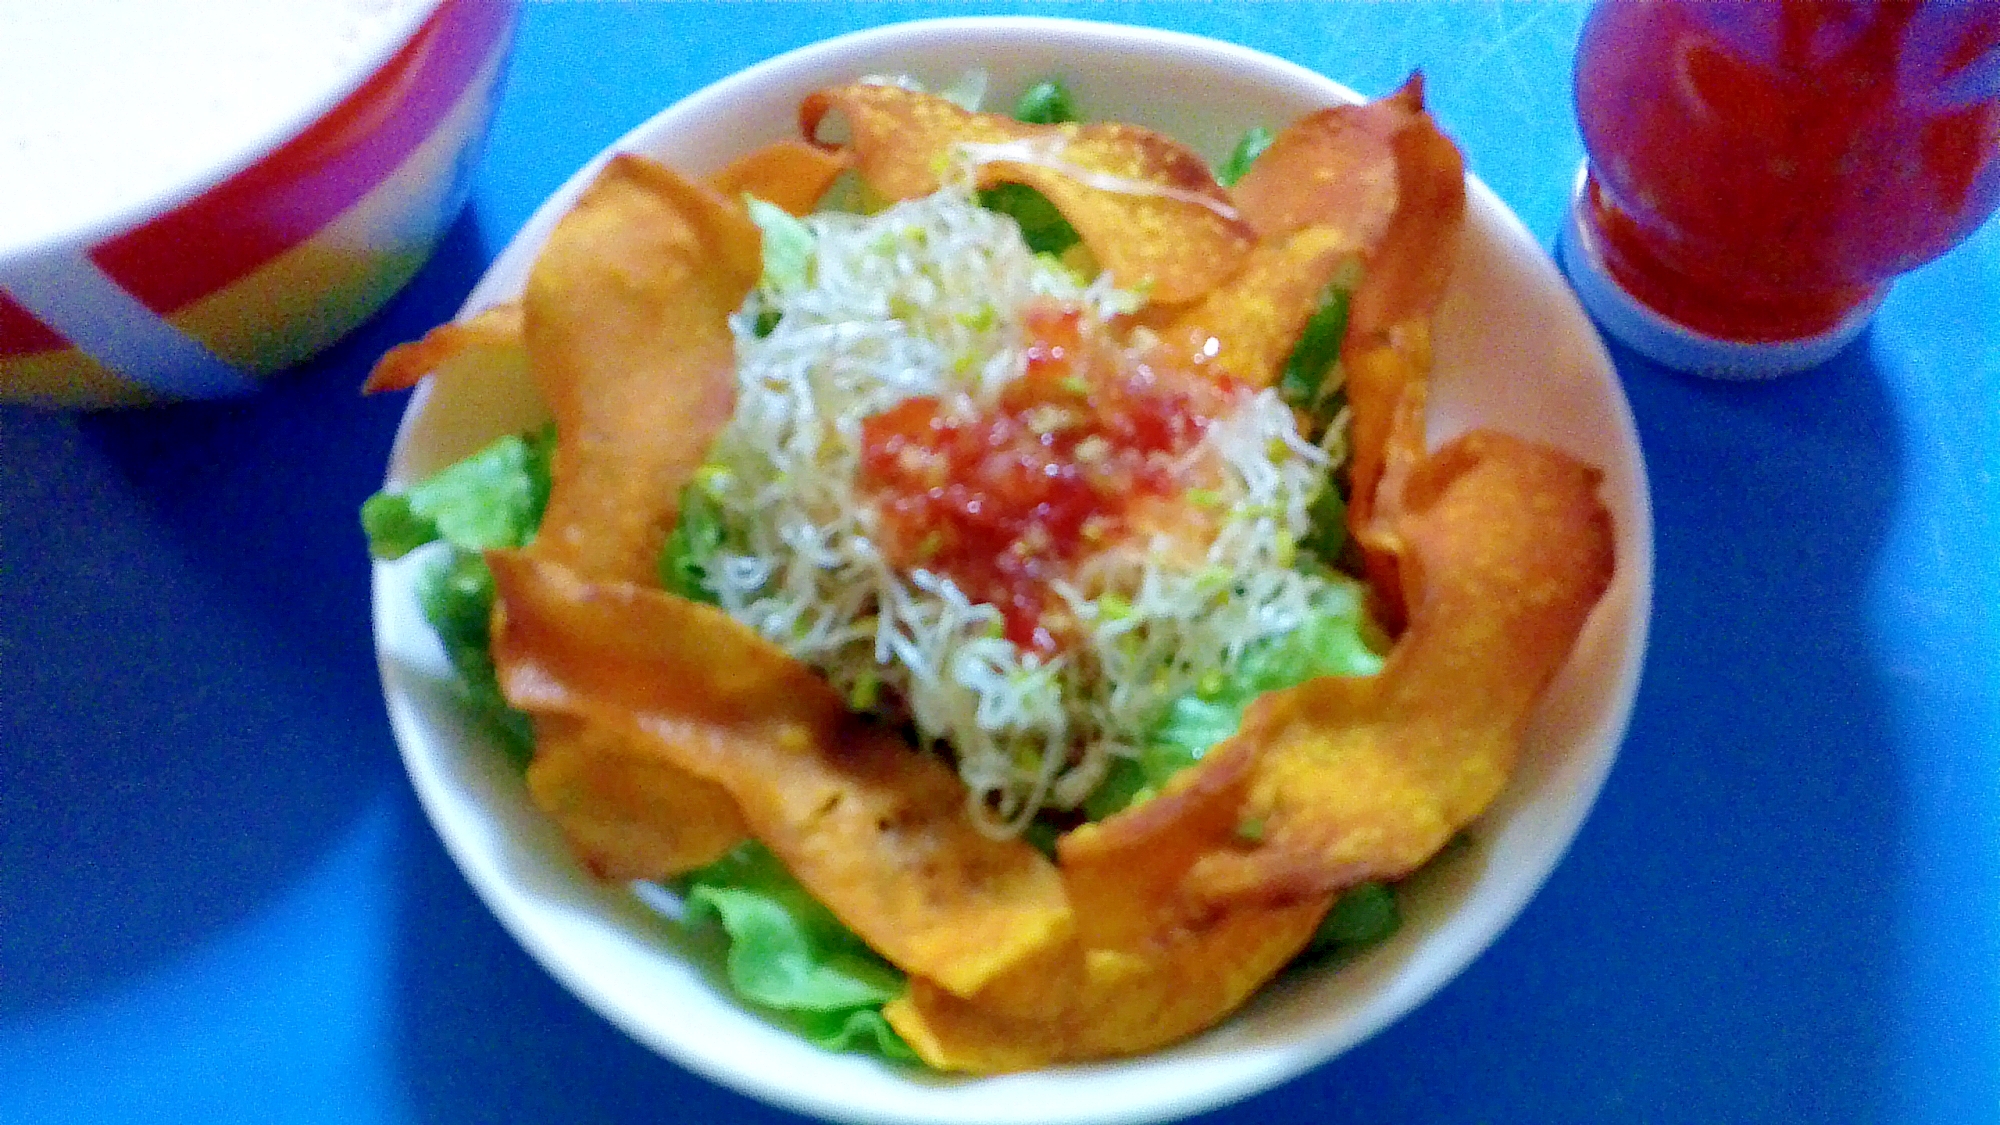 タイ風カボチャチップスサラダ